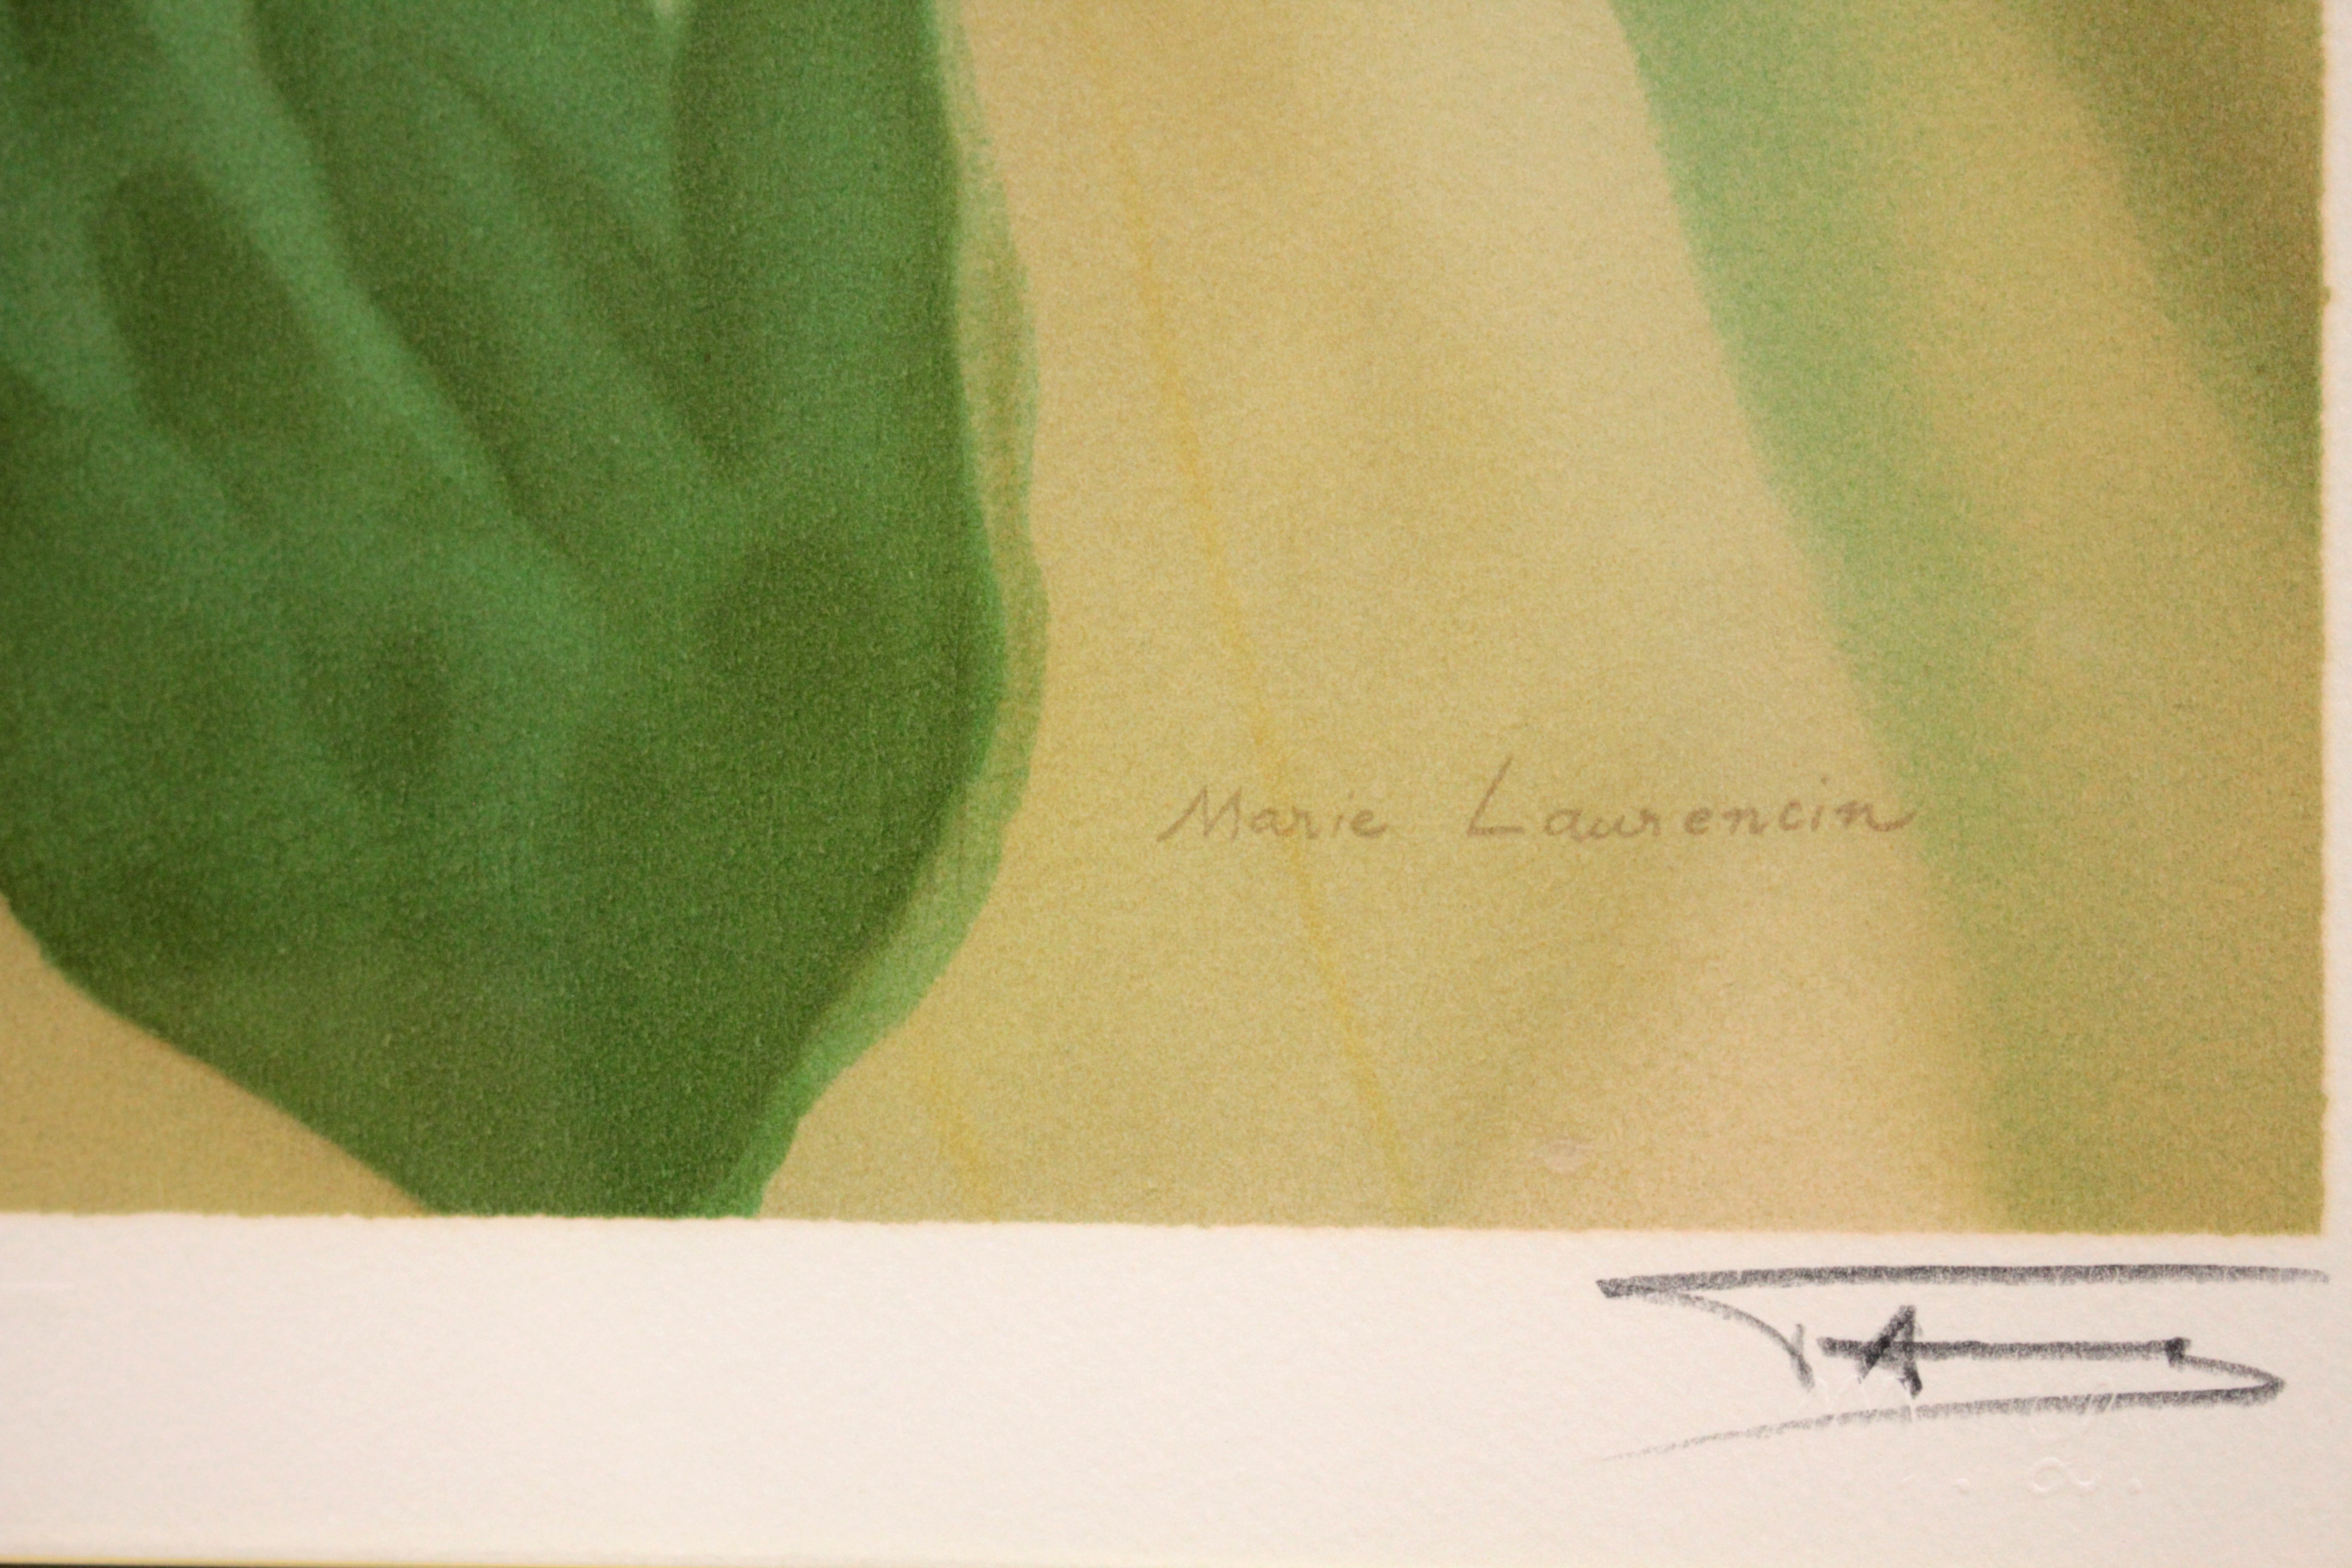 マリー・ローランサン 『ブルーのリボン』 リトグラフ - 北海道画廊